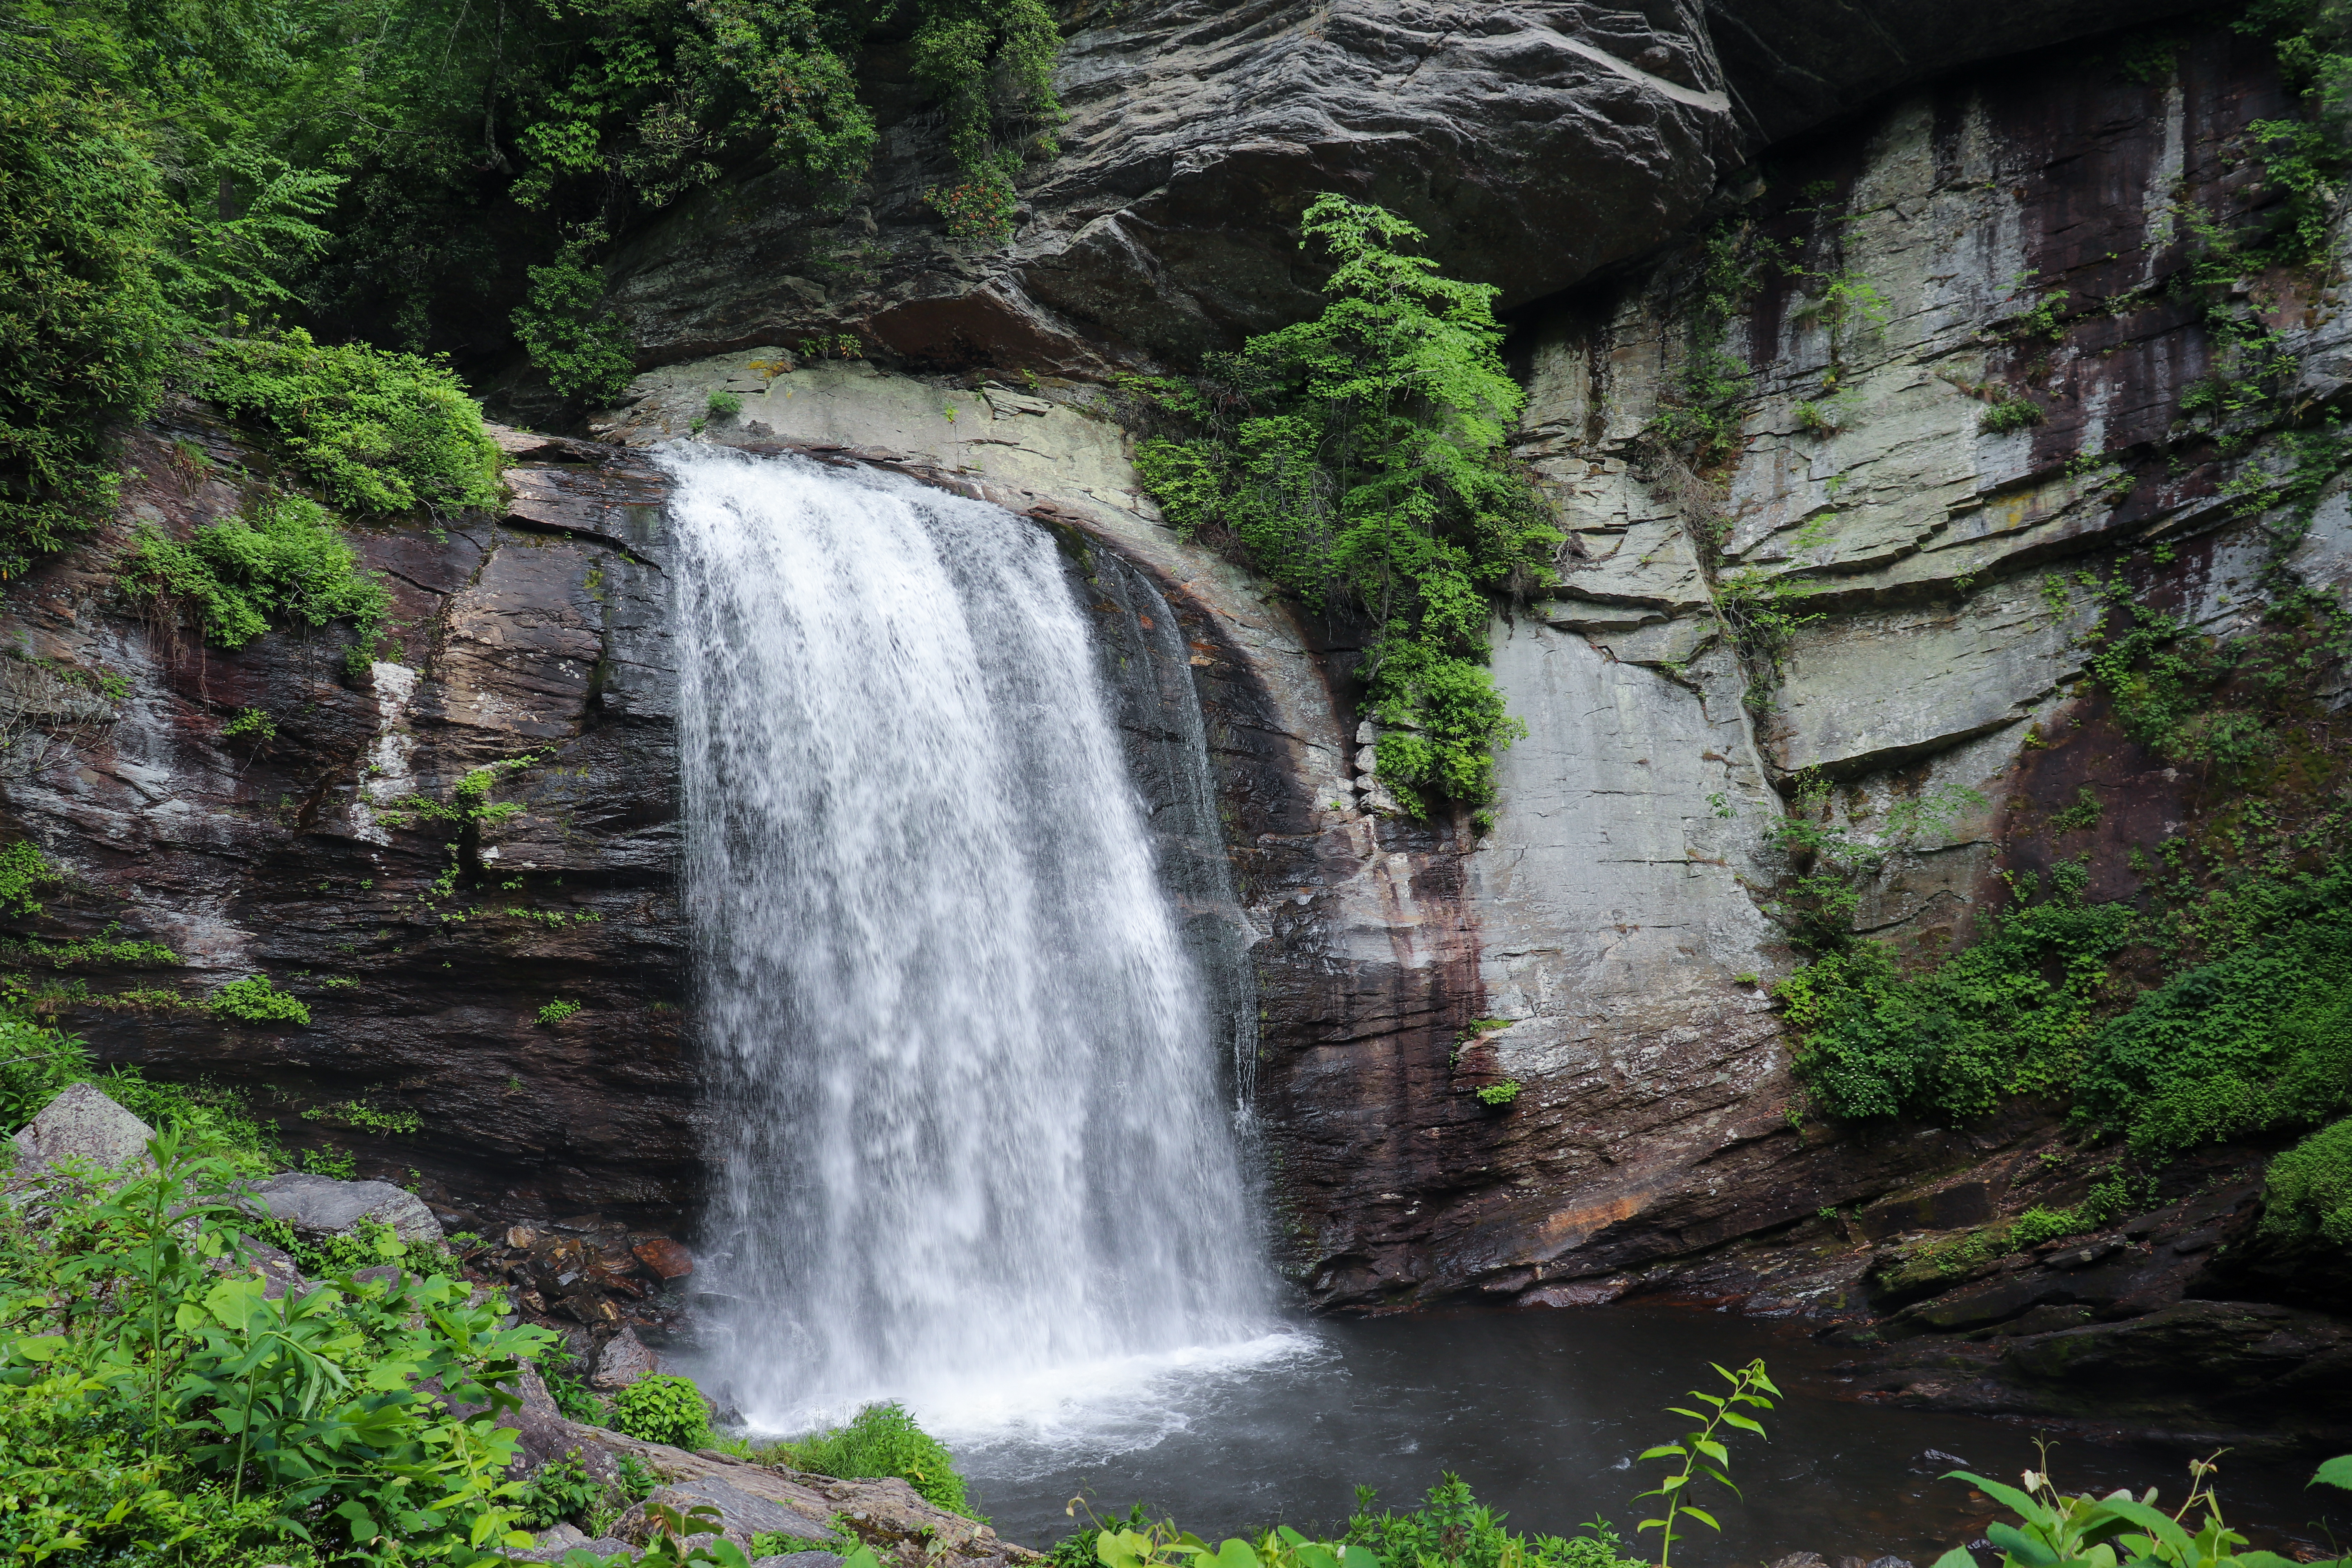 Explore These Amazing Pisgah Waterfalls While Camping on Mount Pisgah